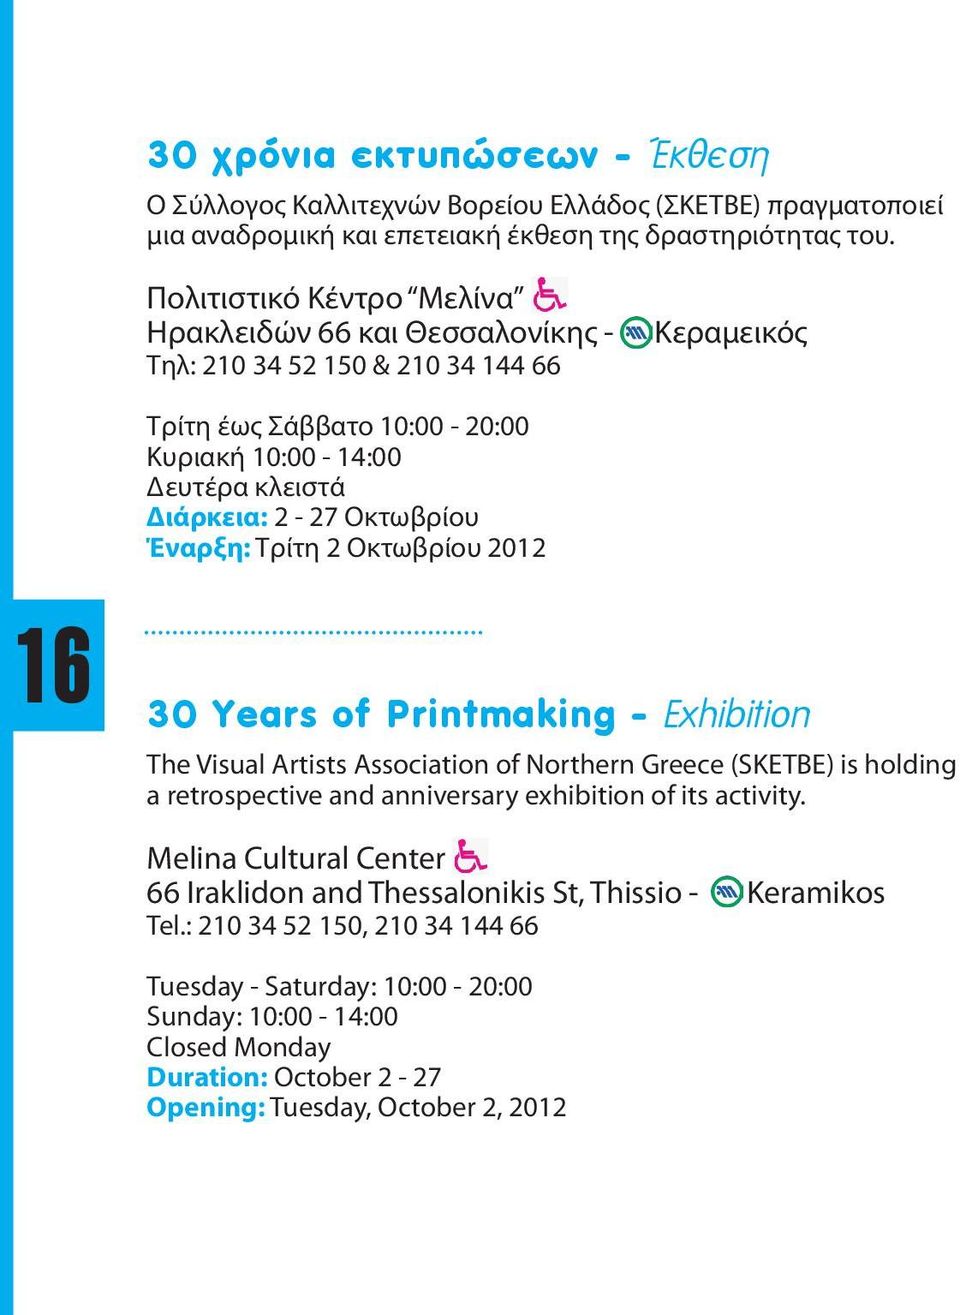 Οκτωβρίου Έναρξη: Τρίτη 2 Οκτωβρίου 2012 30 Years of Printmaking - Exhibition The Visual Artists Association of Northern Greece (SKETBE) is holding a retrospective and anniversary exhibition of